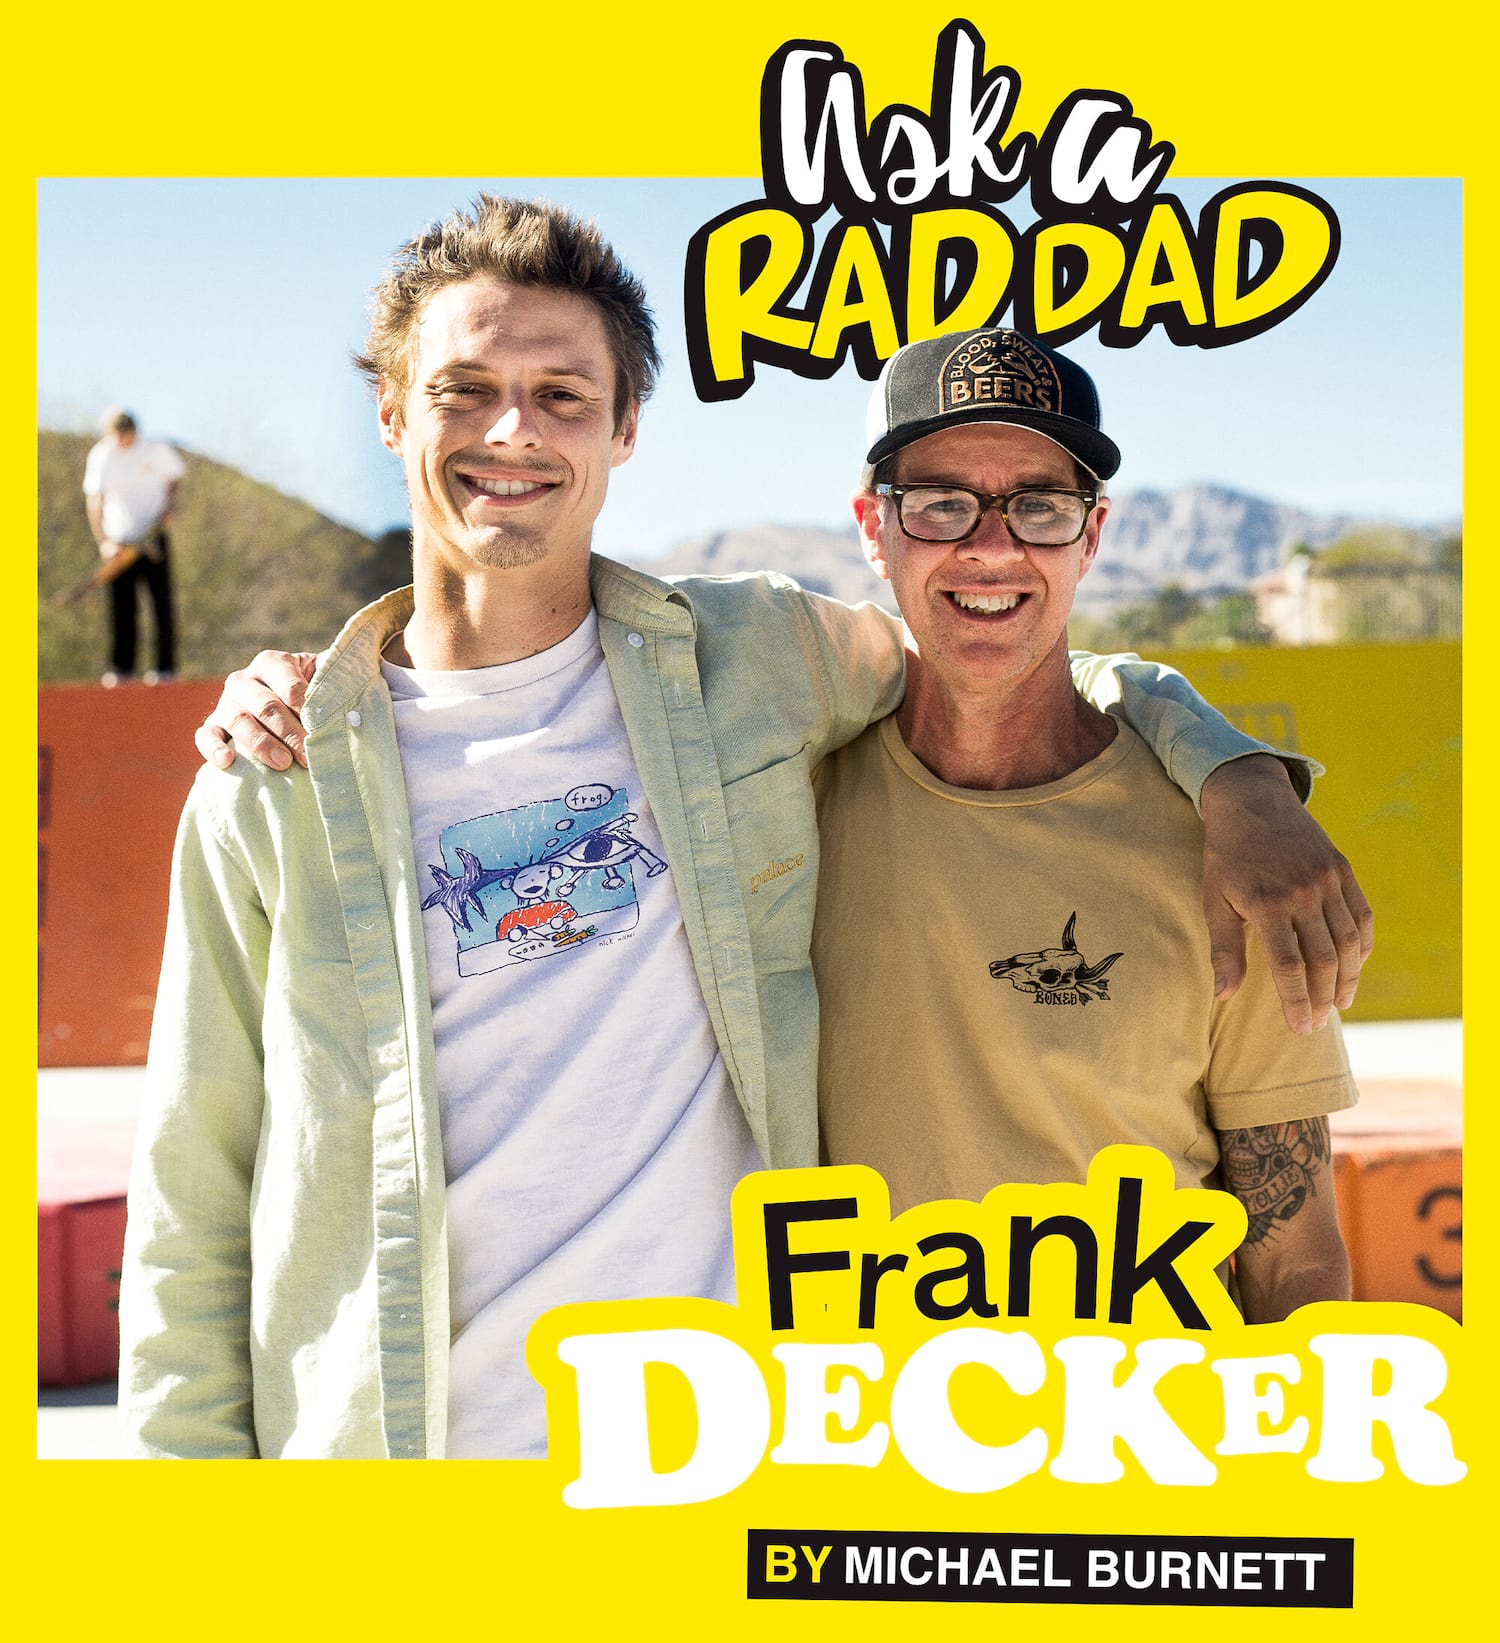 Thrasher Magazine - Am Scramble Interview: Frankie Decker